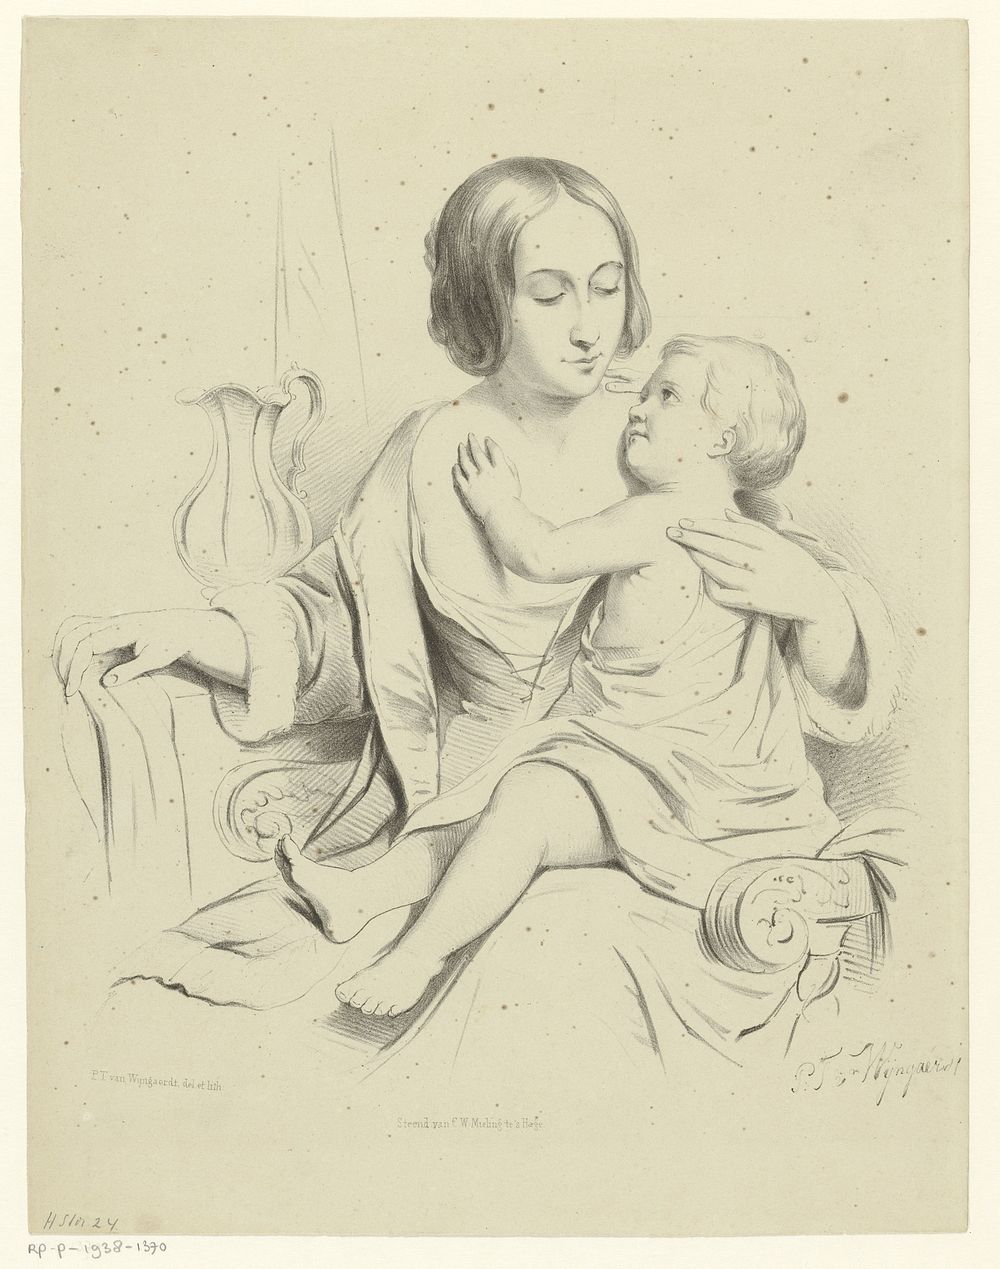 Moeder met kind op schoot (1847 - c. 1865) by Petrus Theodorus van Wijngaerdt, Petrus Theodorus van Wijngaerdt and…